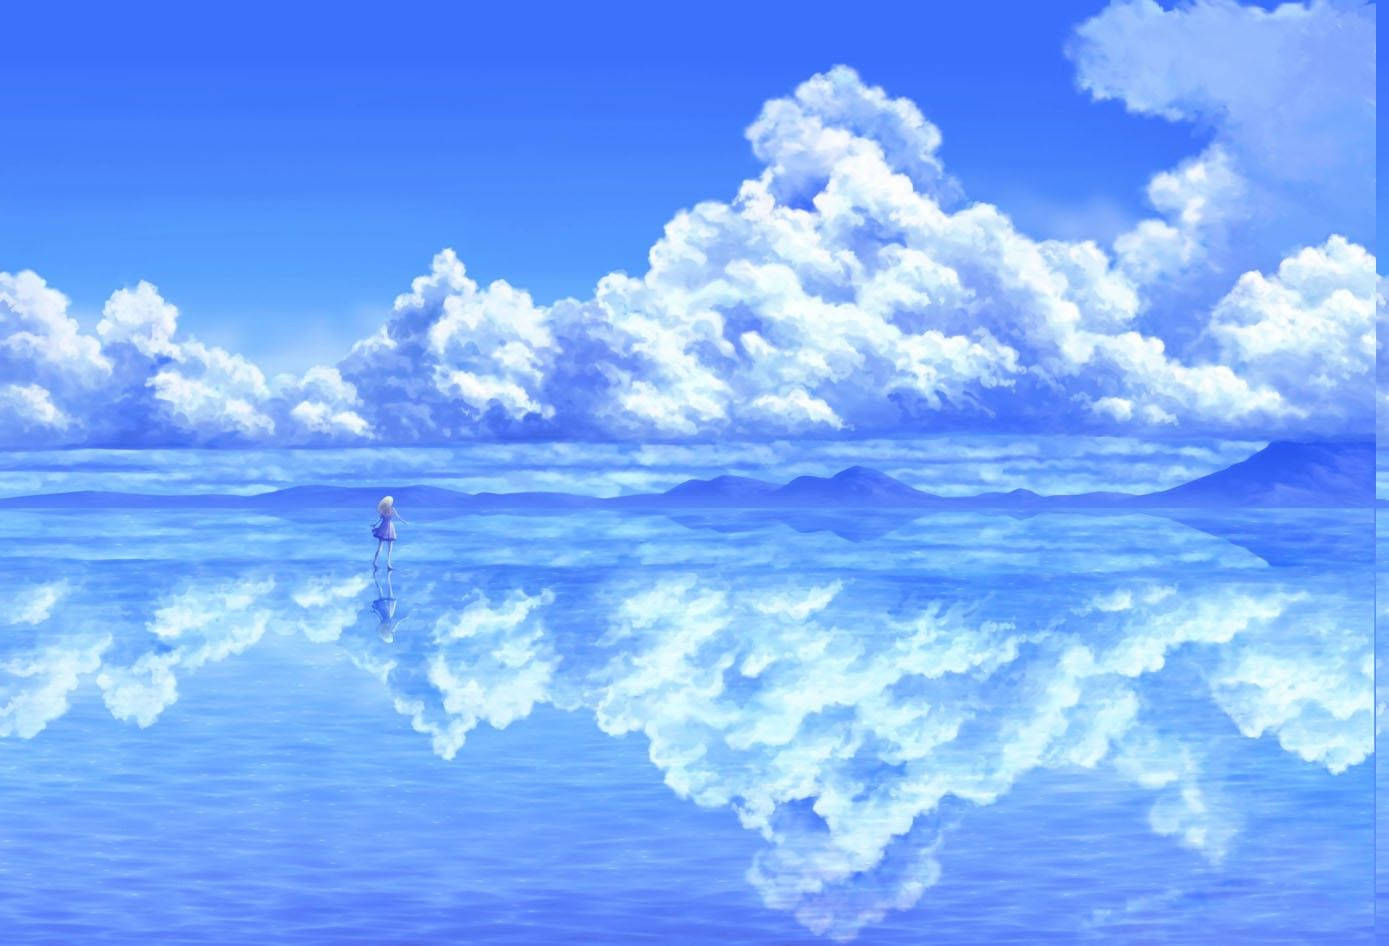 Anime Landscape Sea Of Clouds